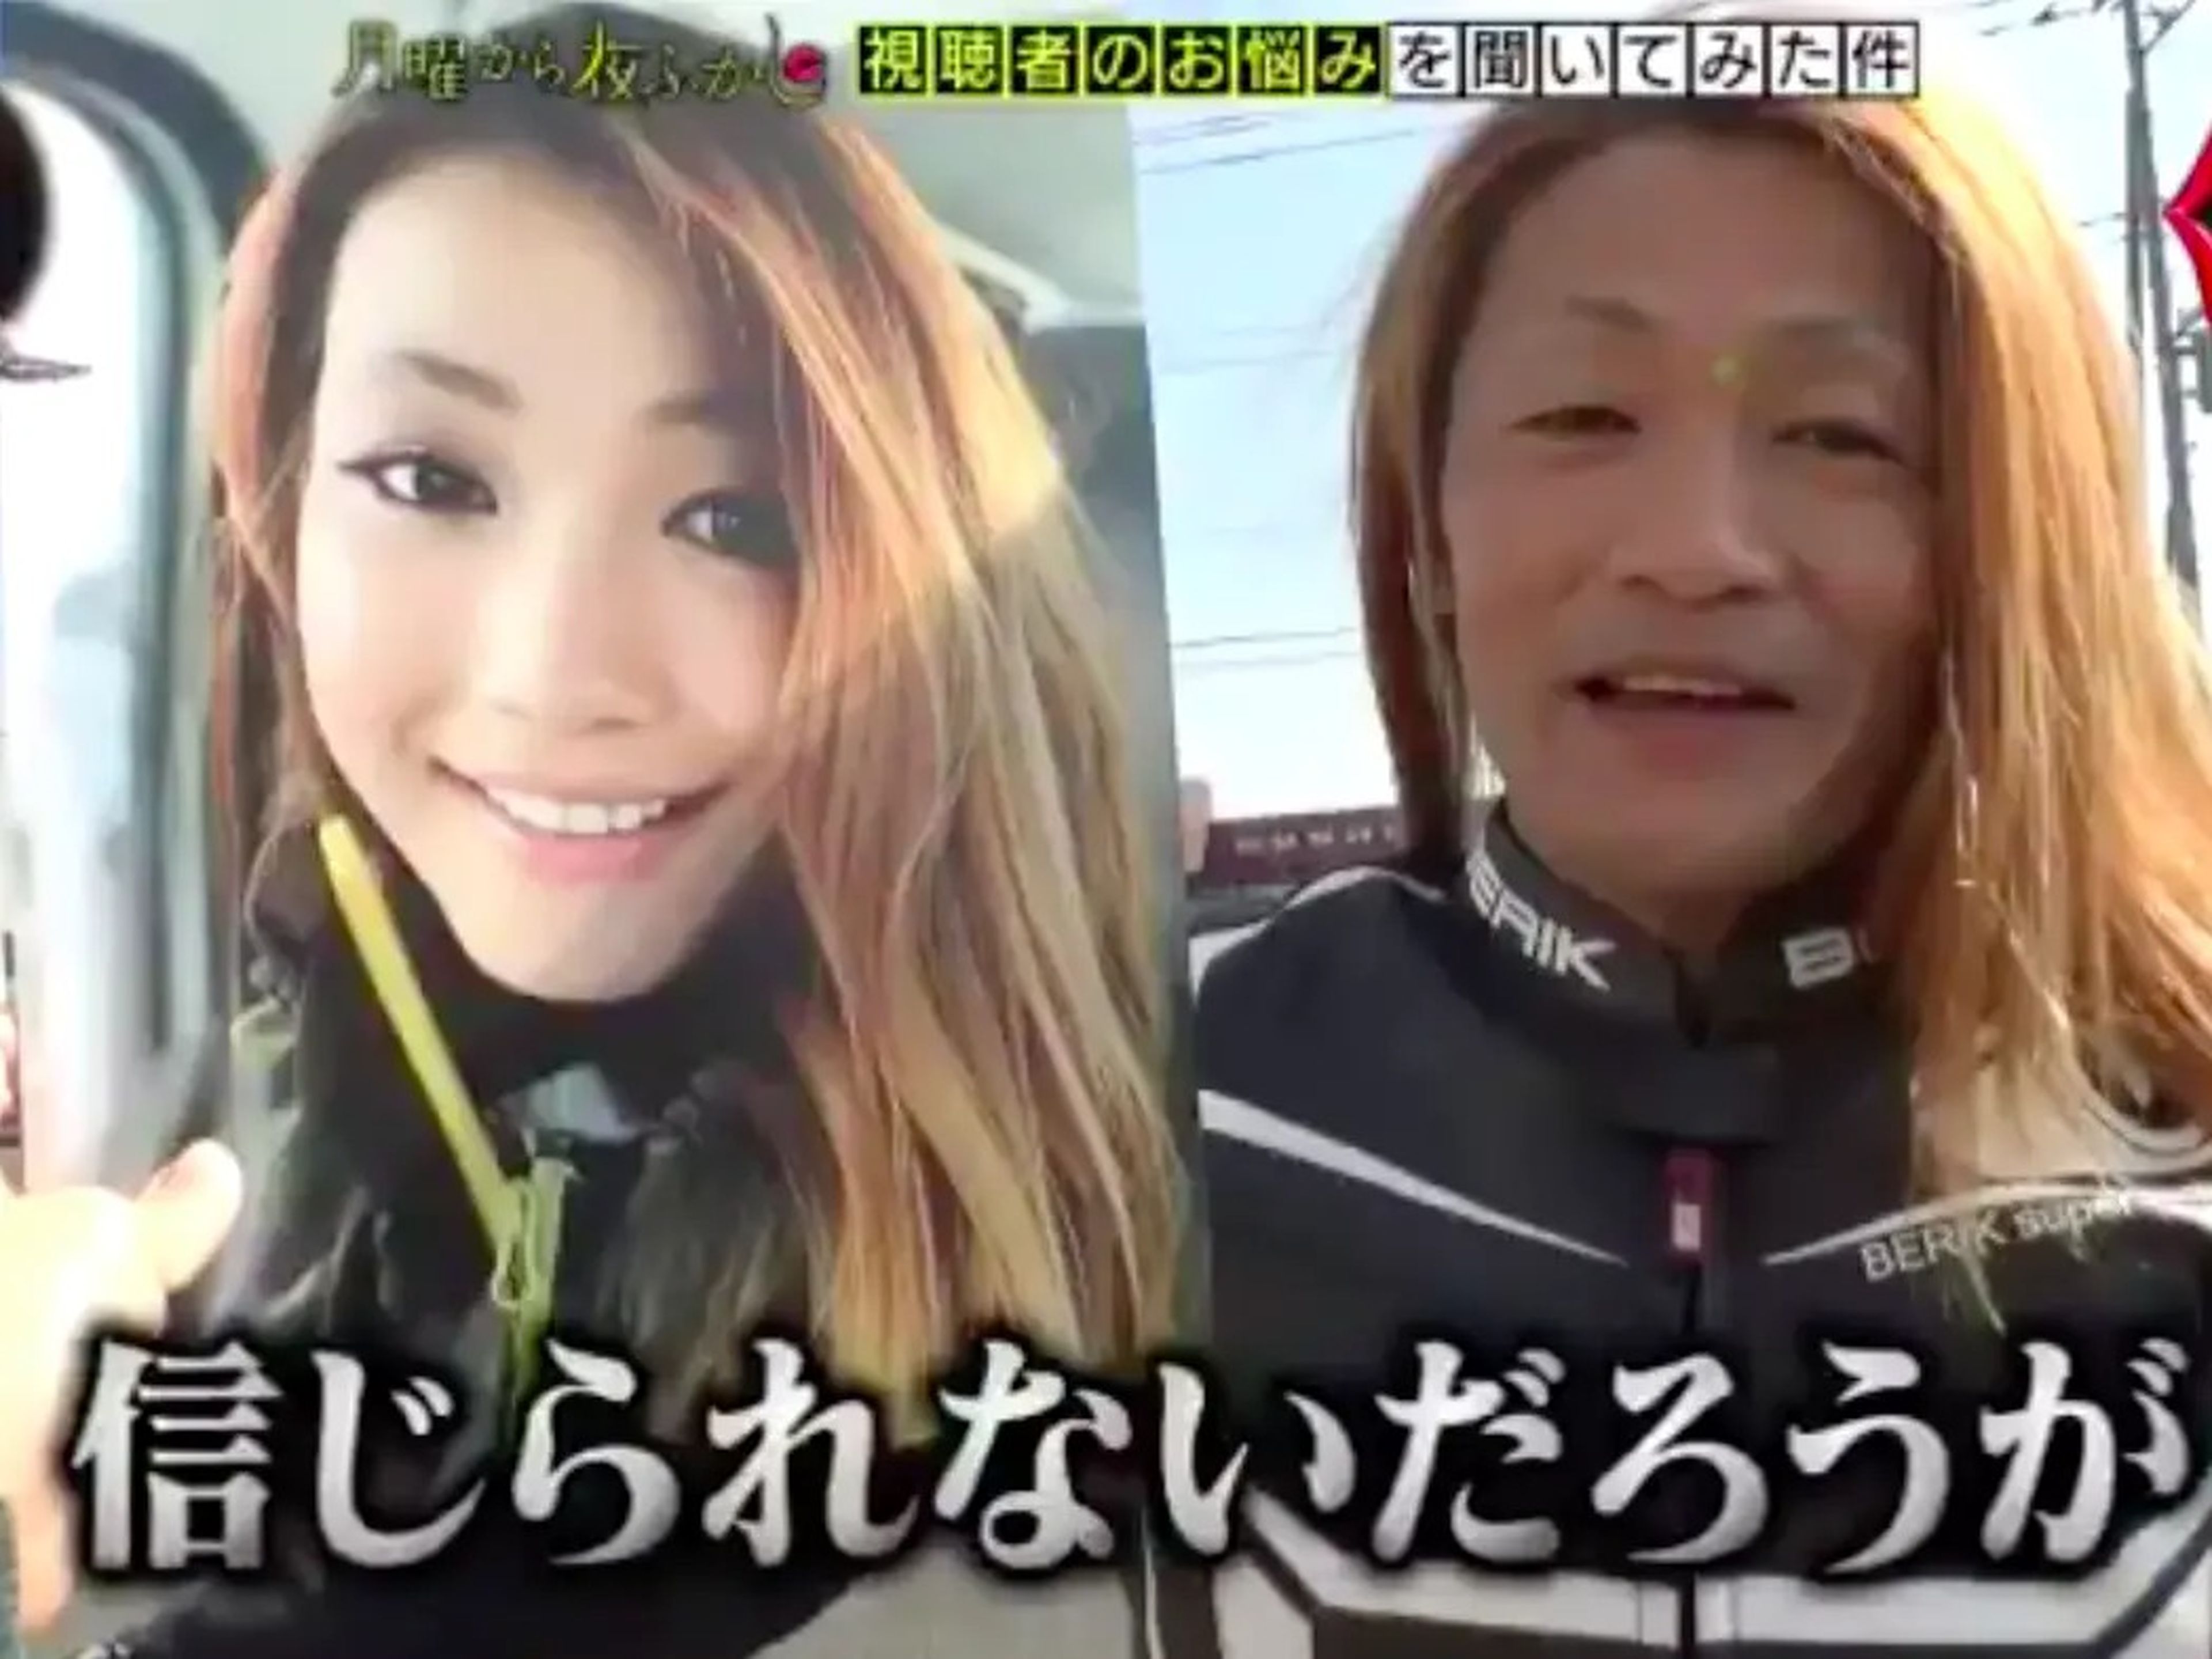 Yasuo Nakajima (derecha), 50, estuvo posando como Soya no Sohi (izquierda) en Twitter durante meses.